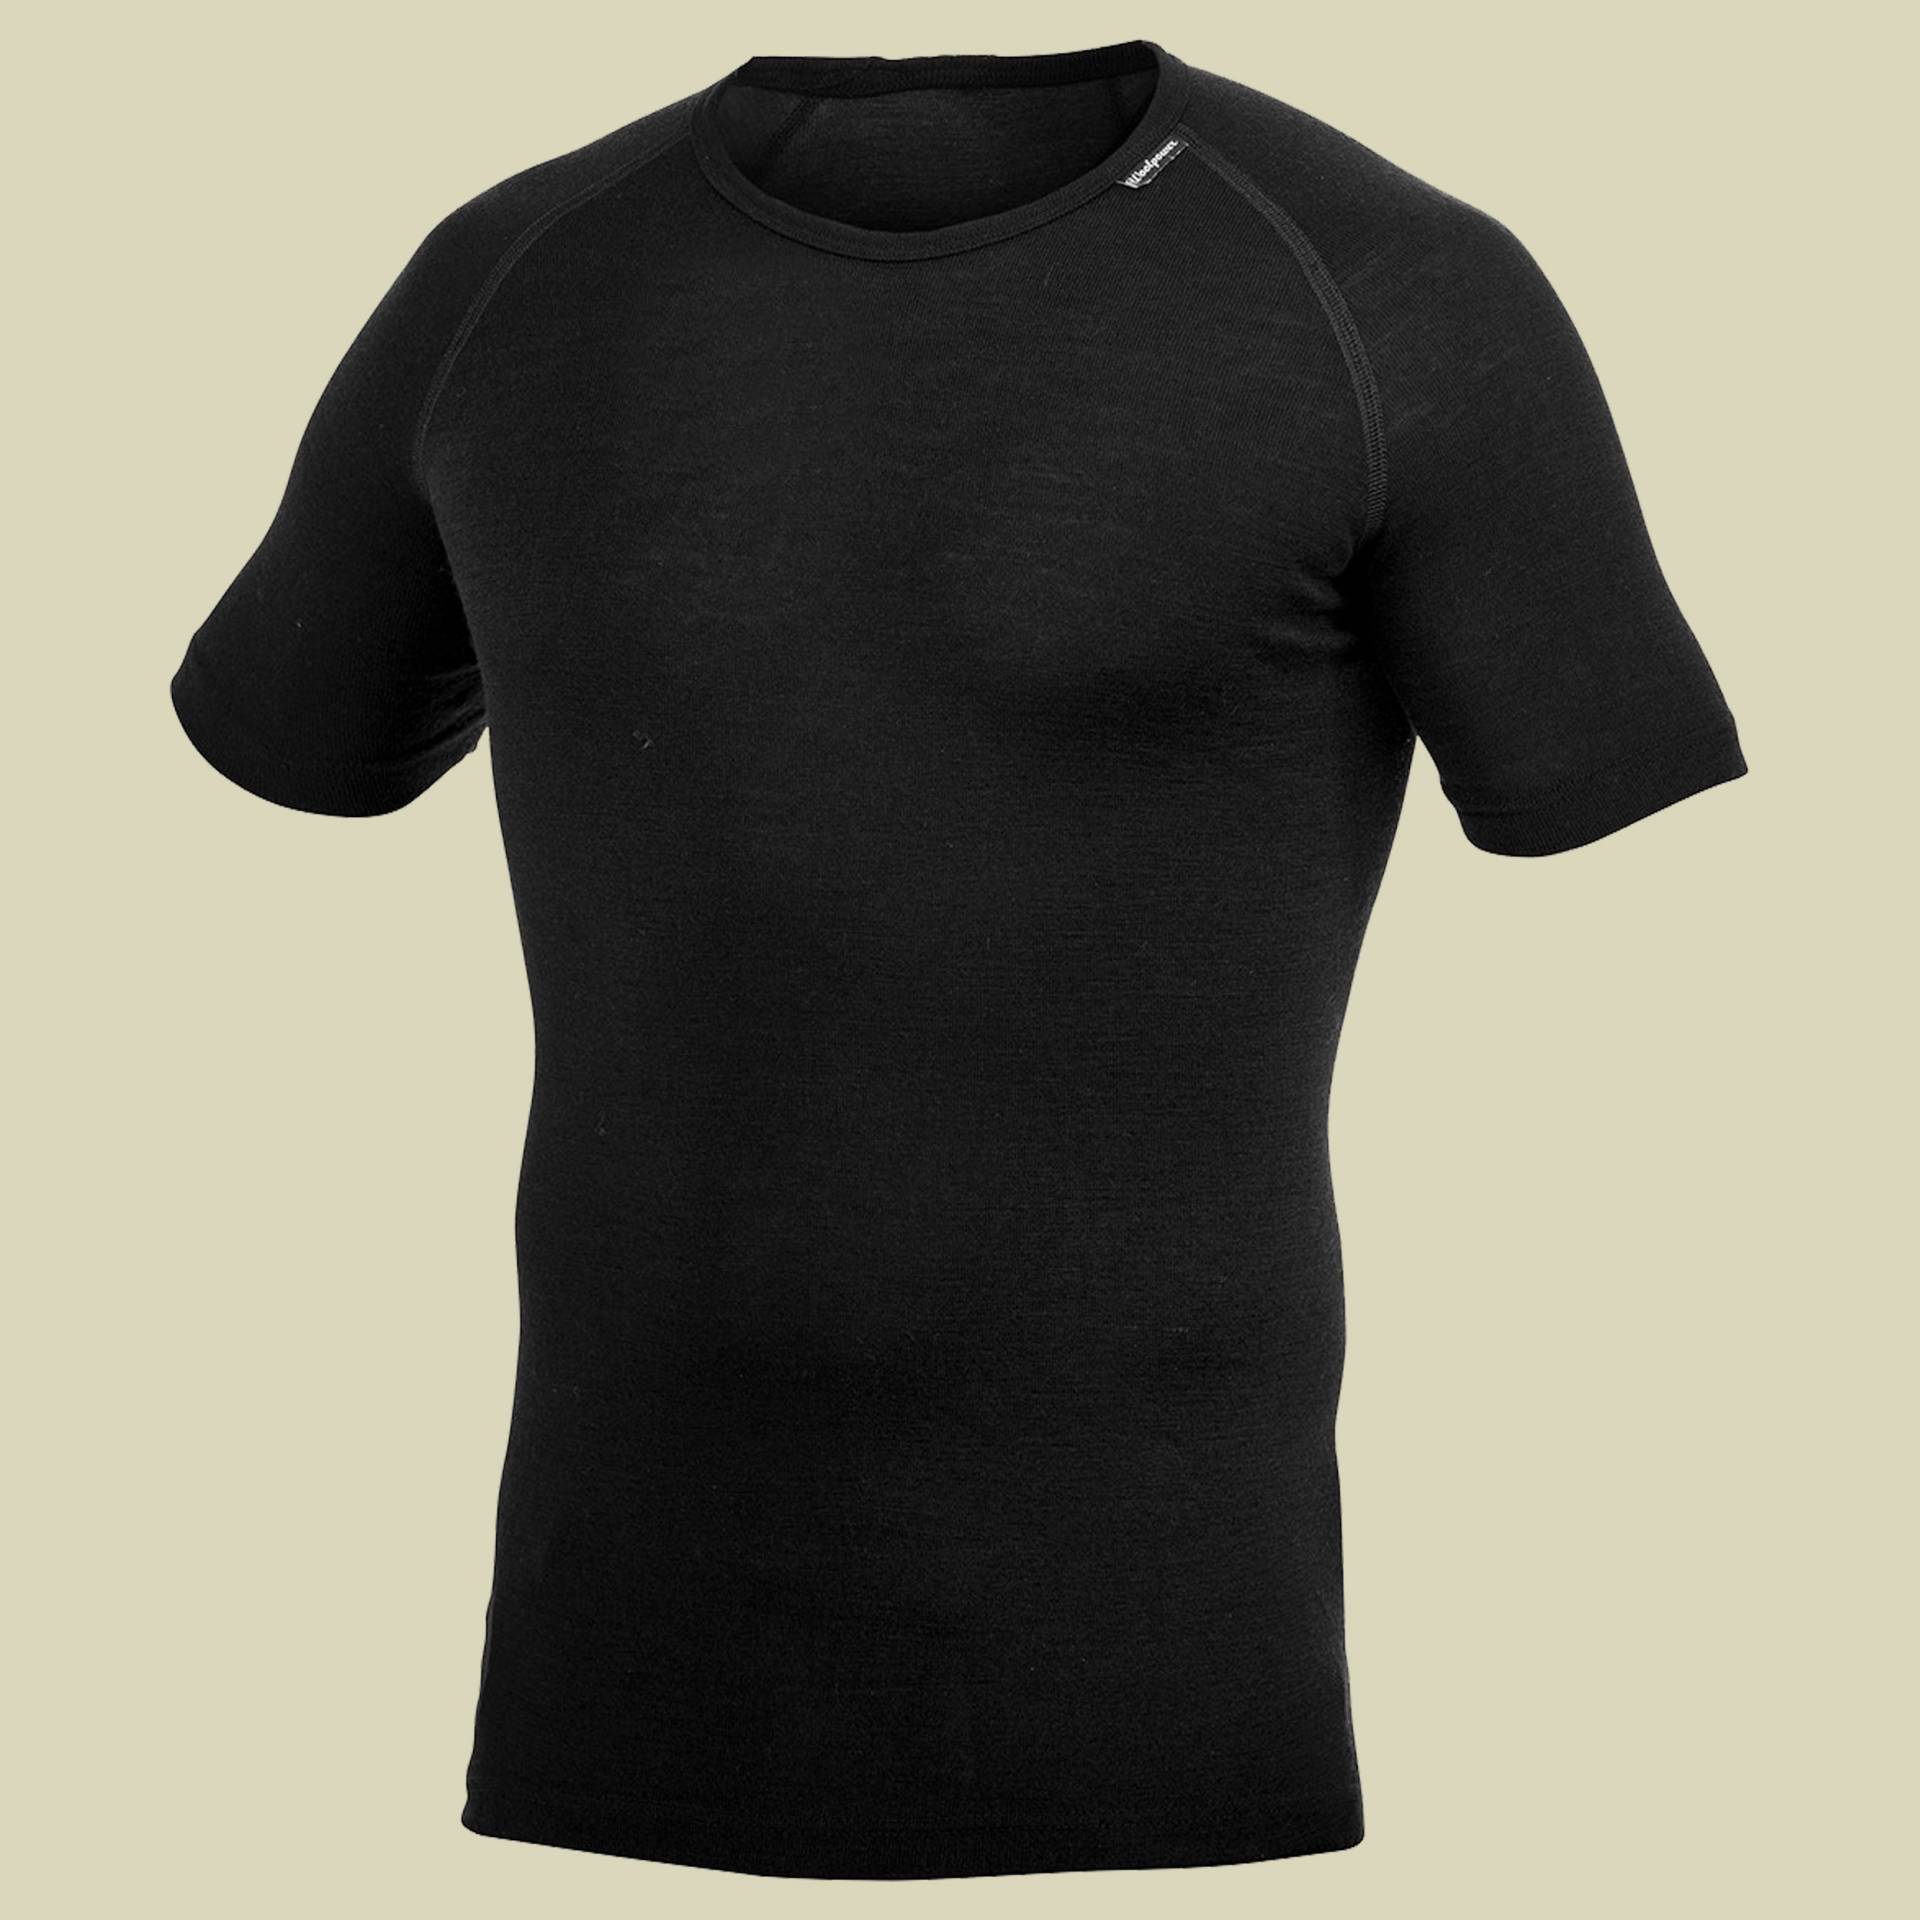 Lite T-Shirt XS schwarz - Farbe black von Woolpower